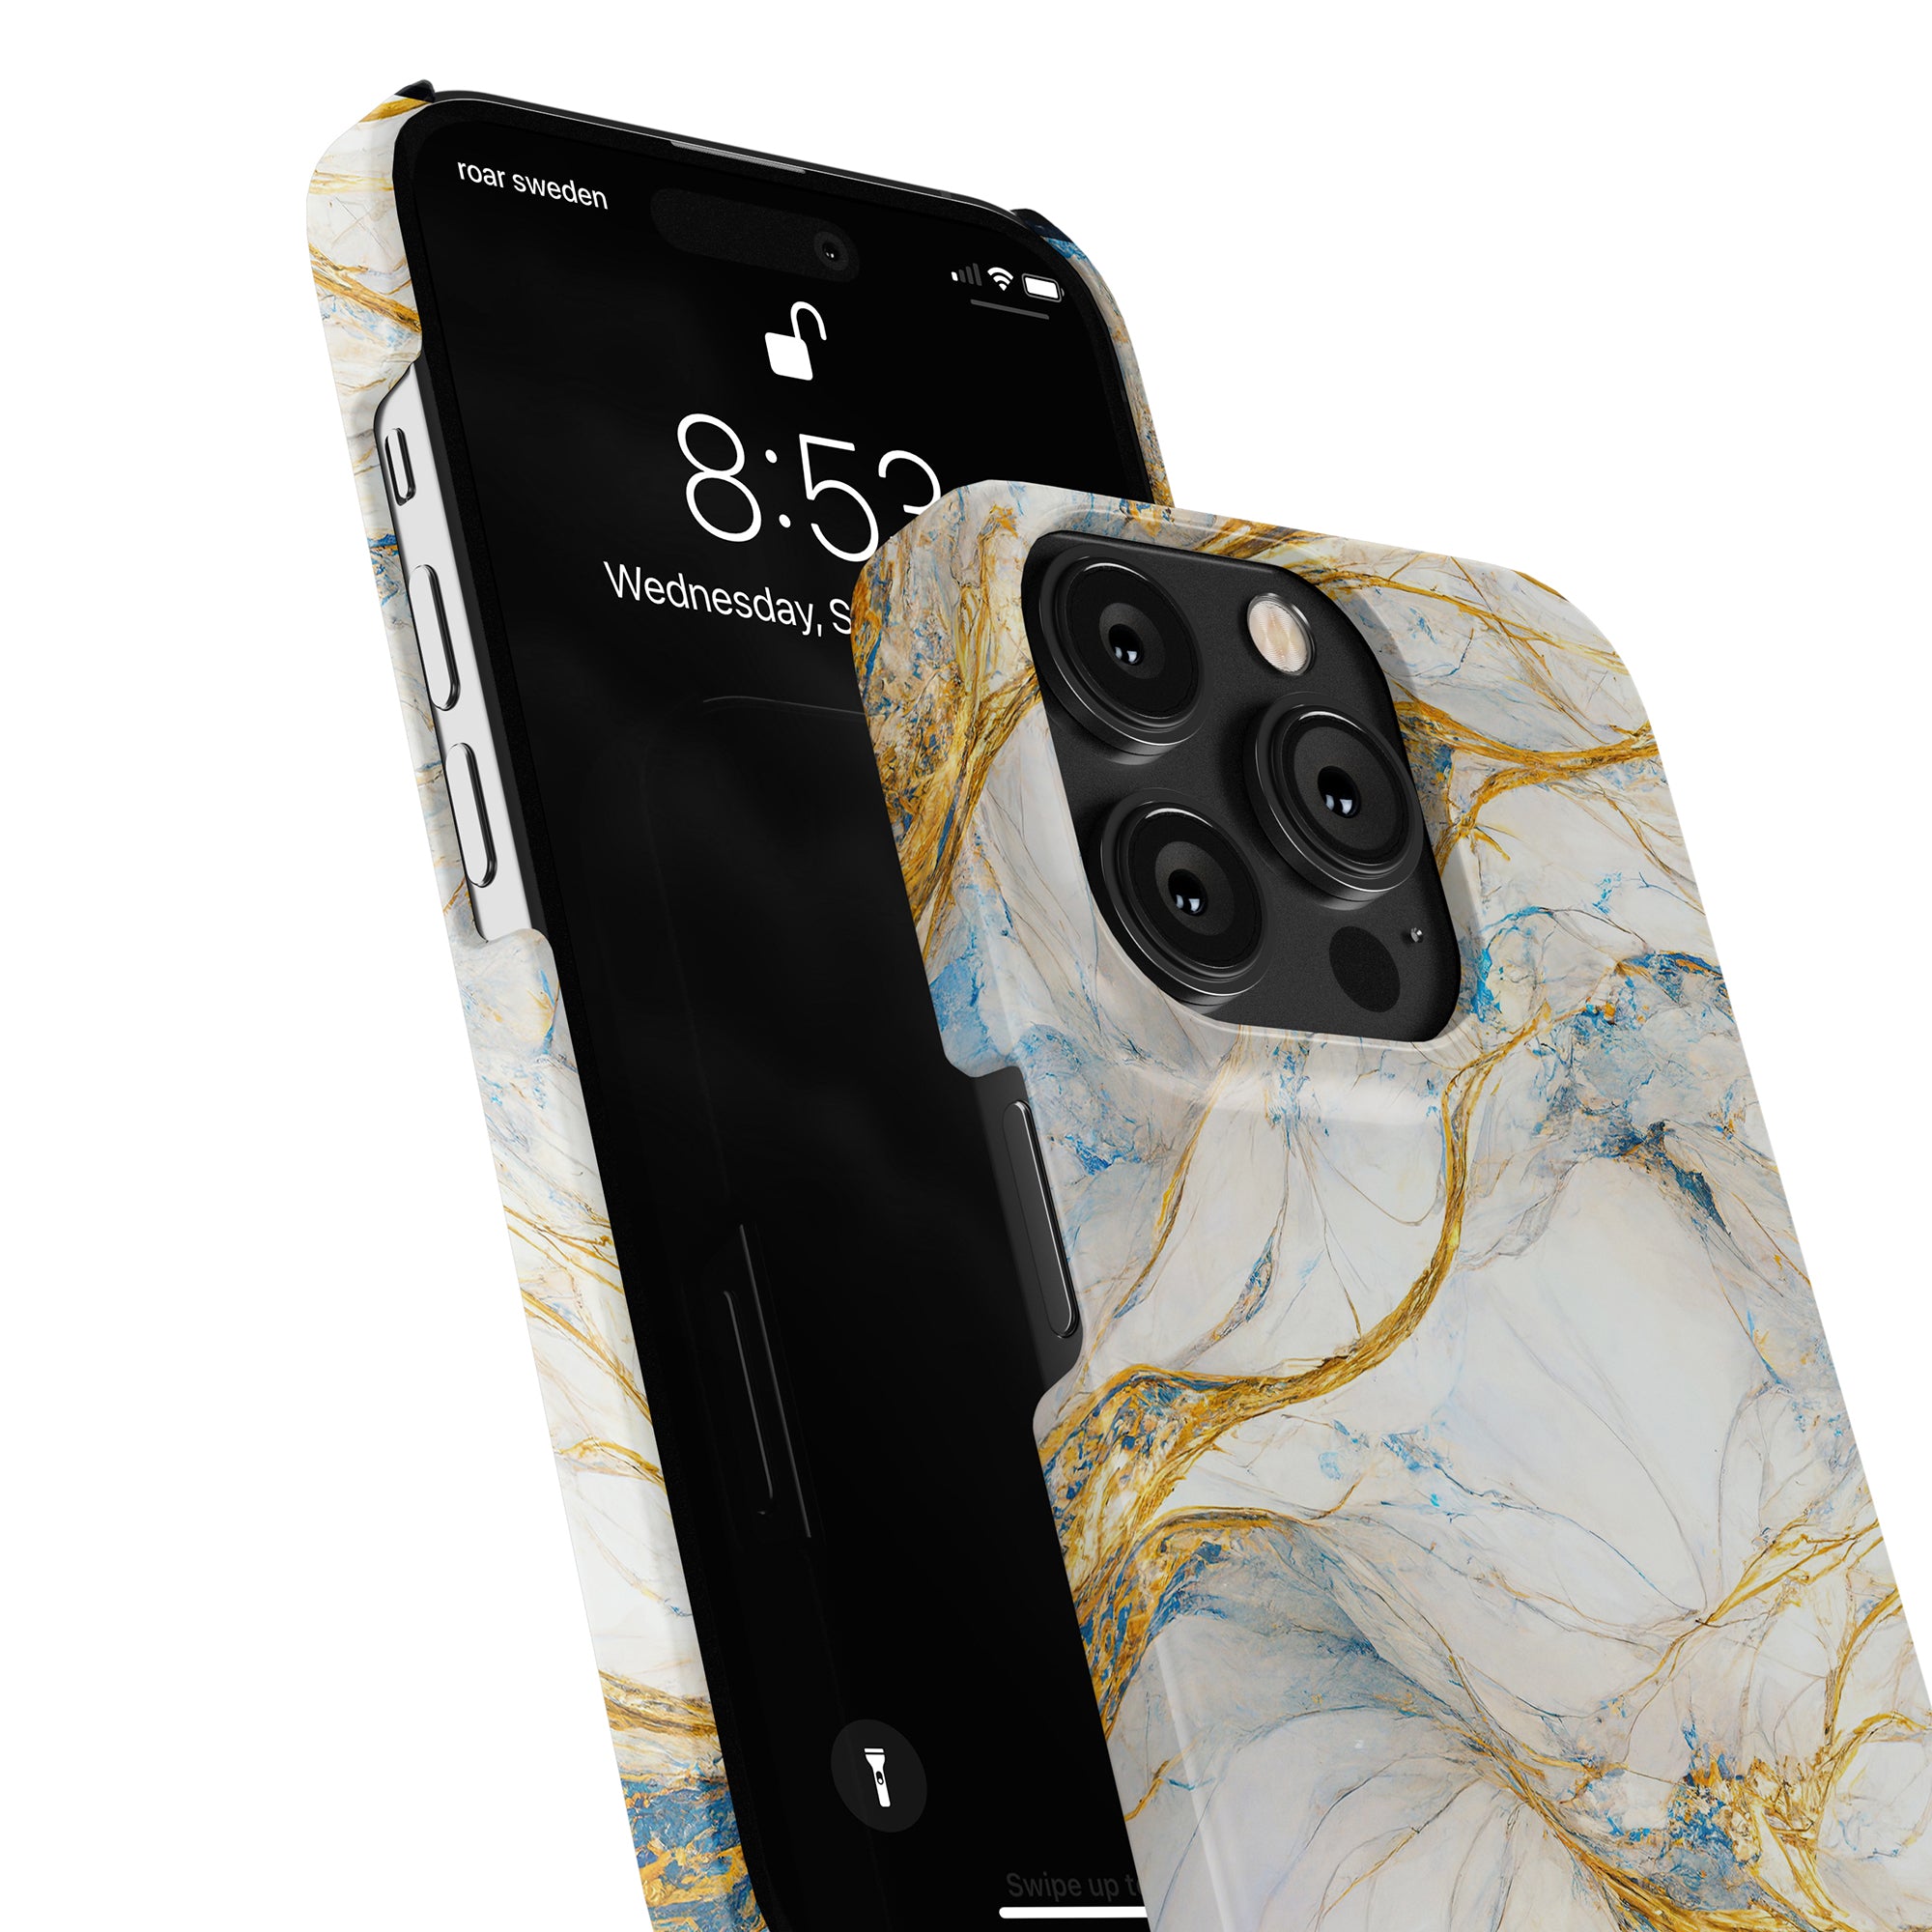 Ett Queen Marble - Slim fodral iphone 11 fodral med en elegant design.